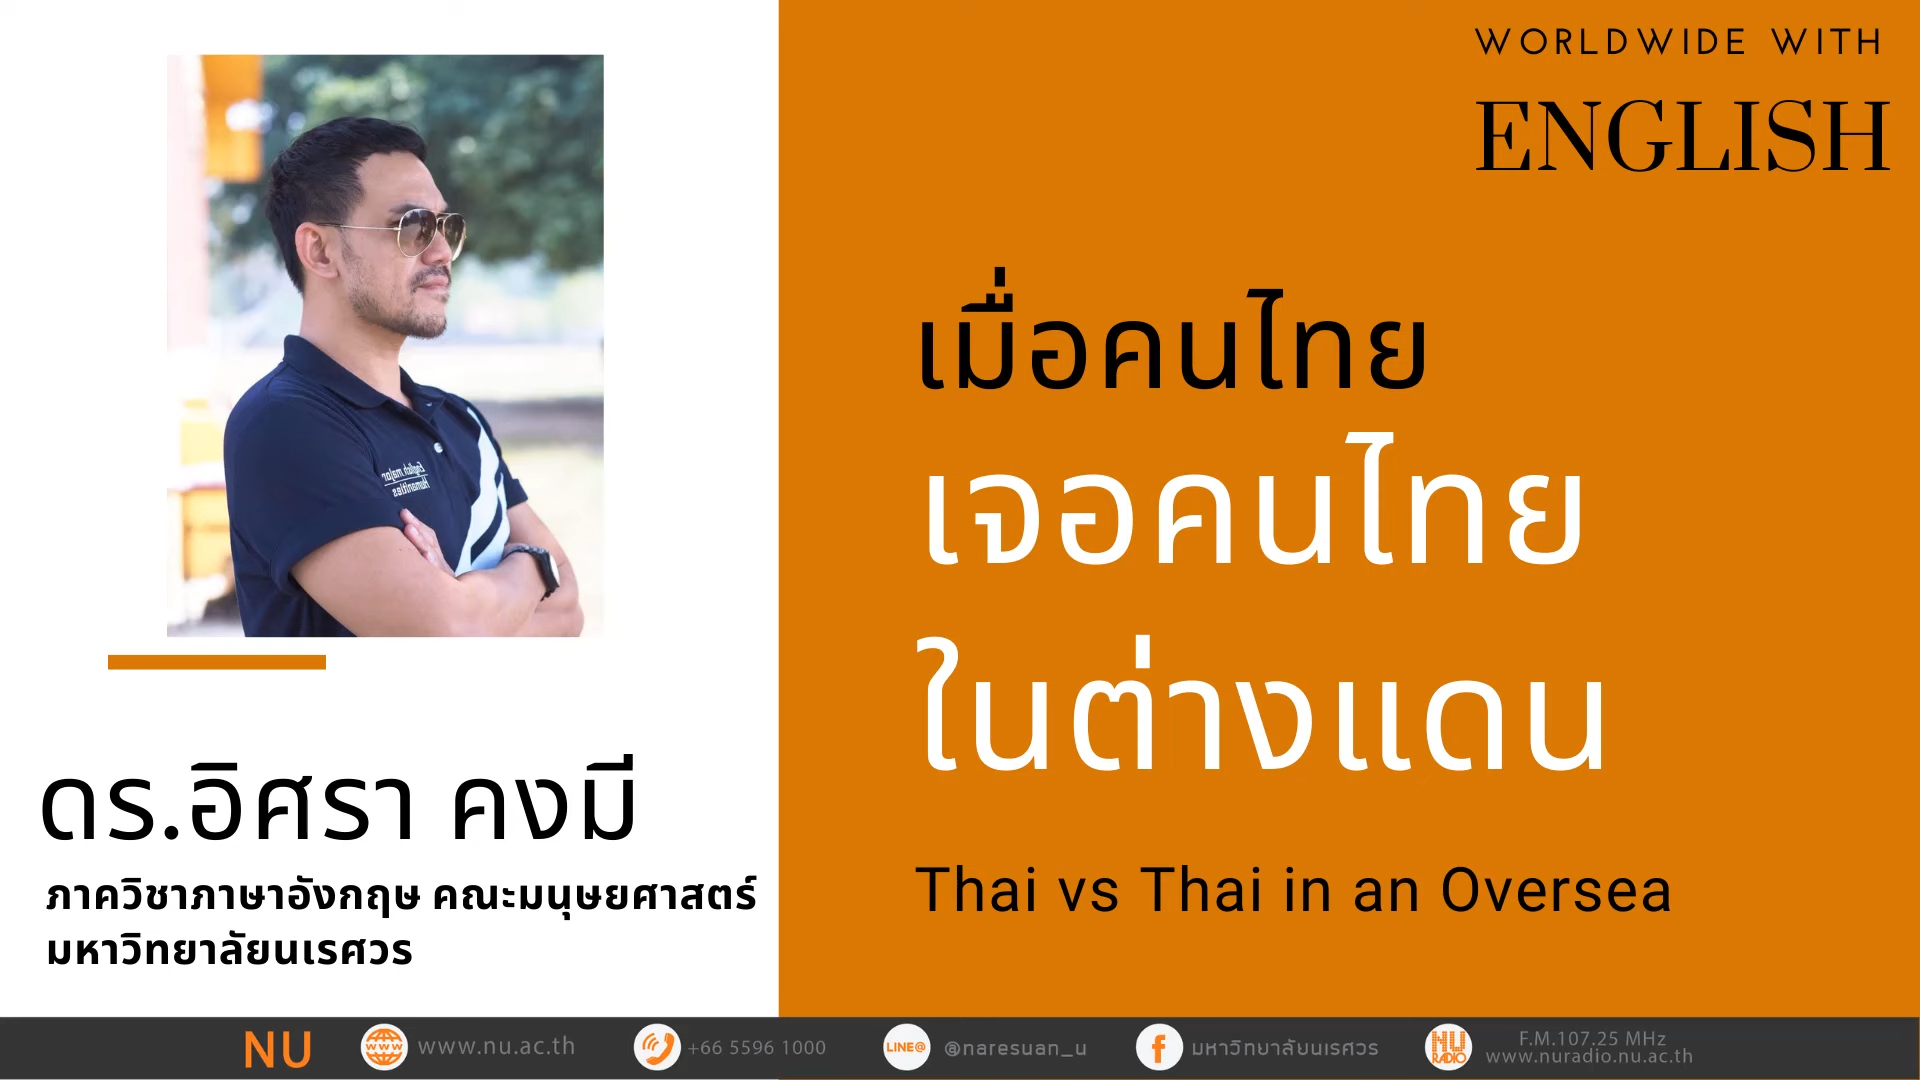 เมื่อคนไทยเจอคนไทยในต่างแดน (Thai vs Thai in an Oversea)